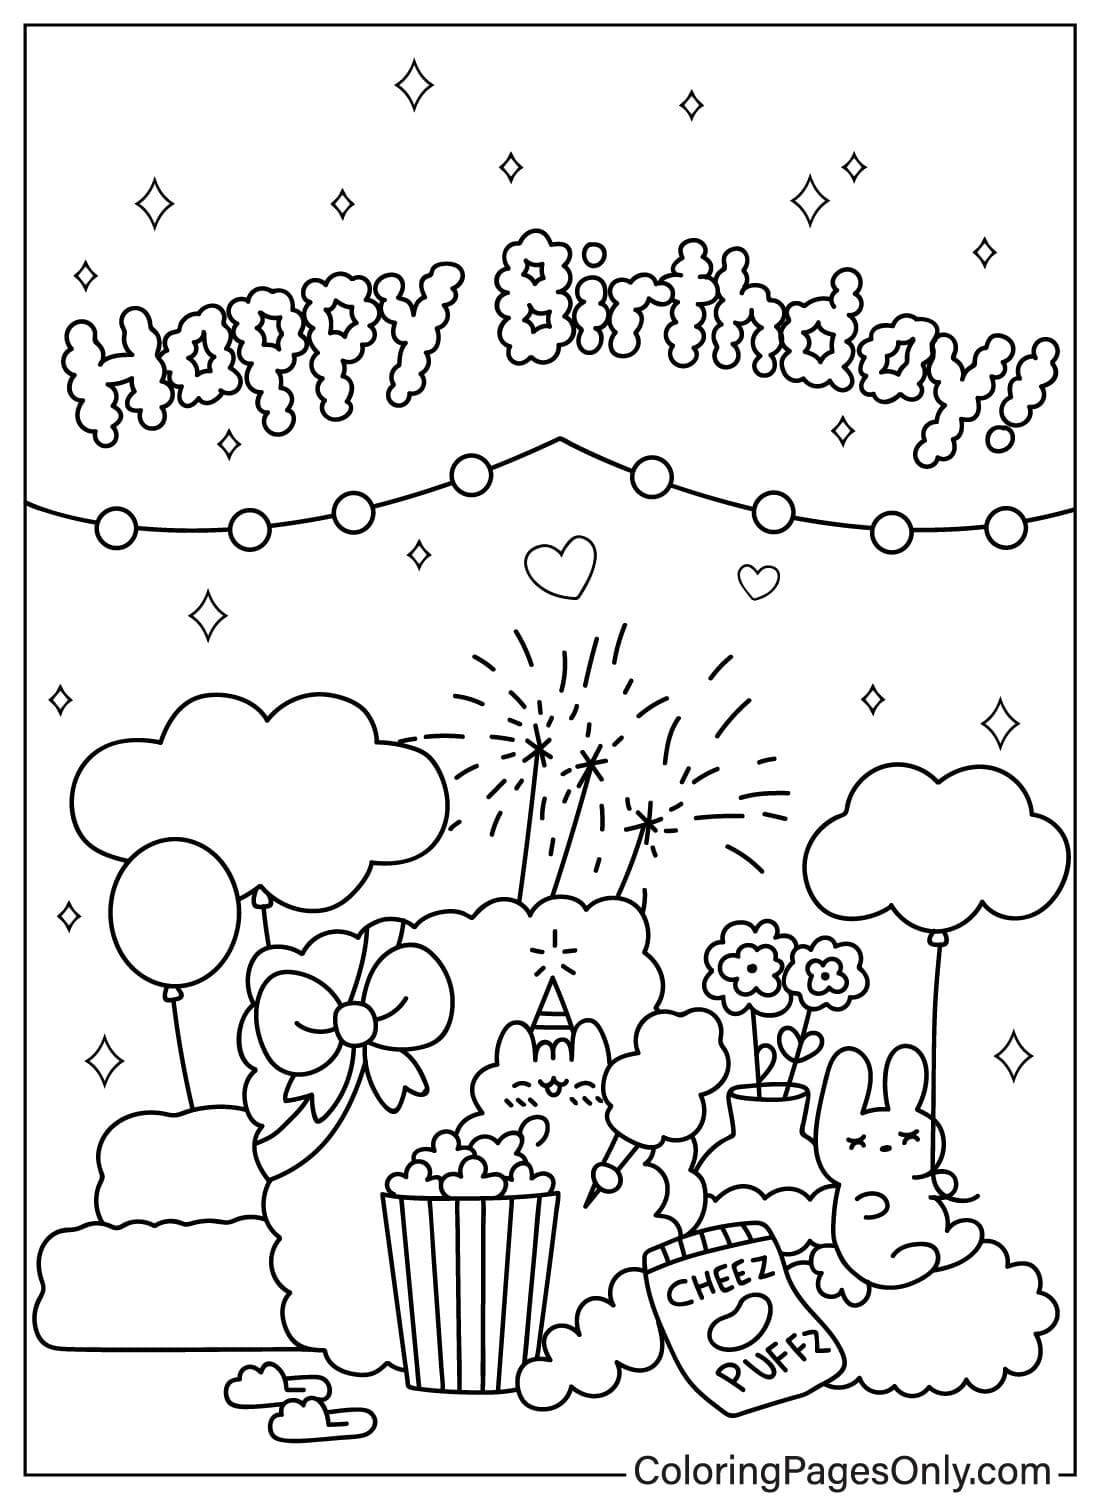 Pagina da colorare di buon compleanno stampabile gratuitamente